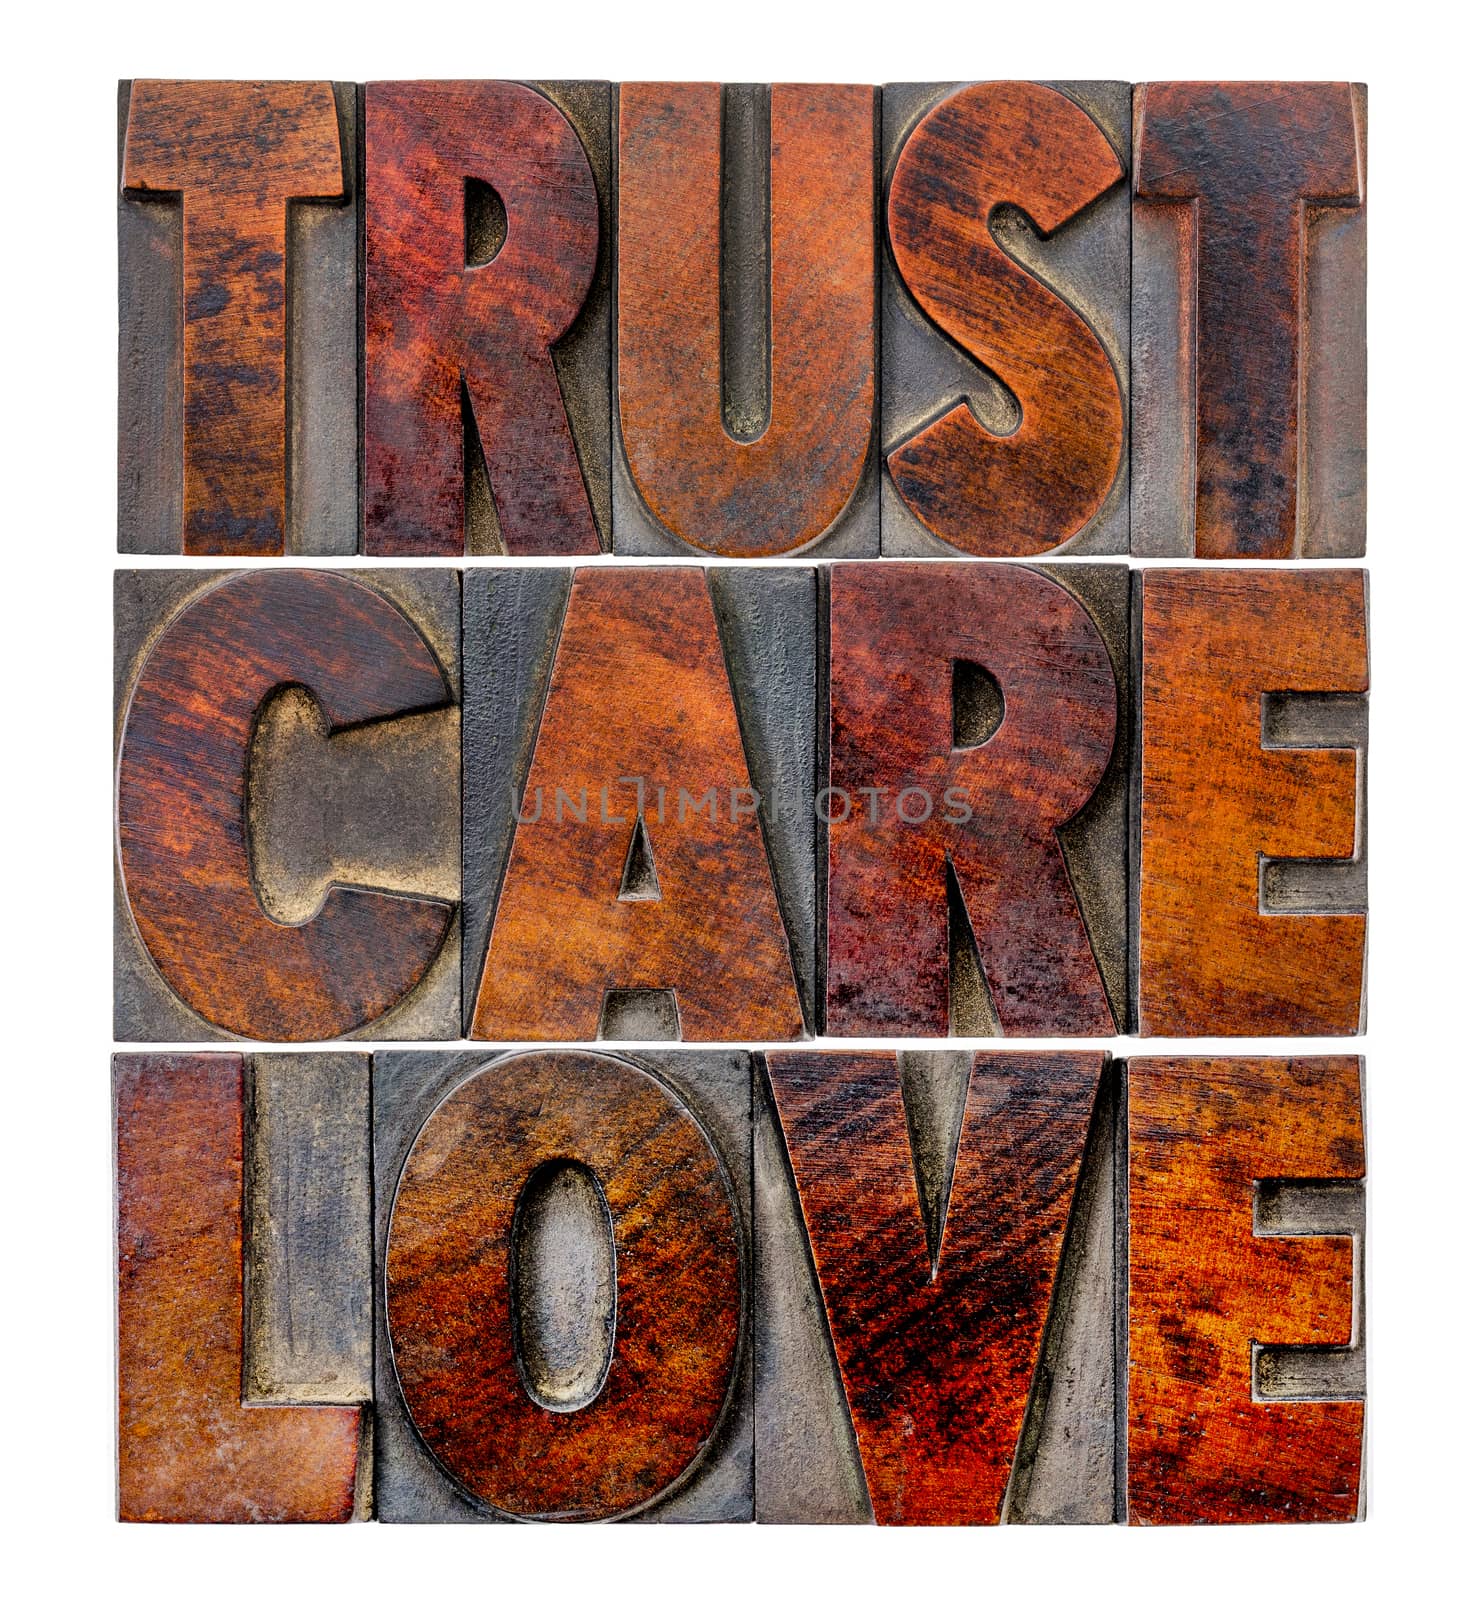 trust, care, love in wood type by PixelsAway